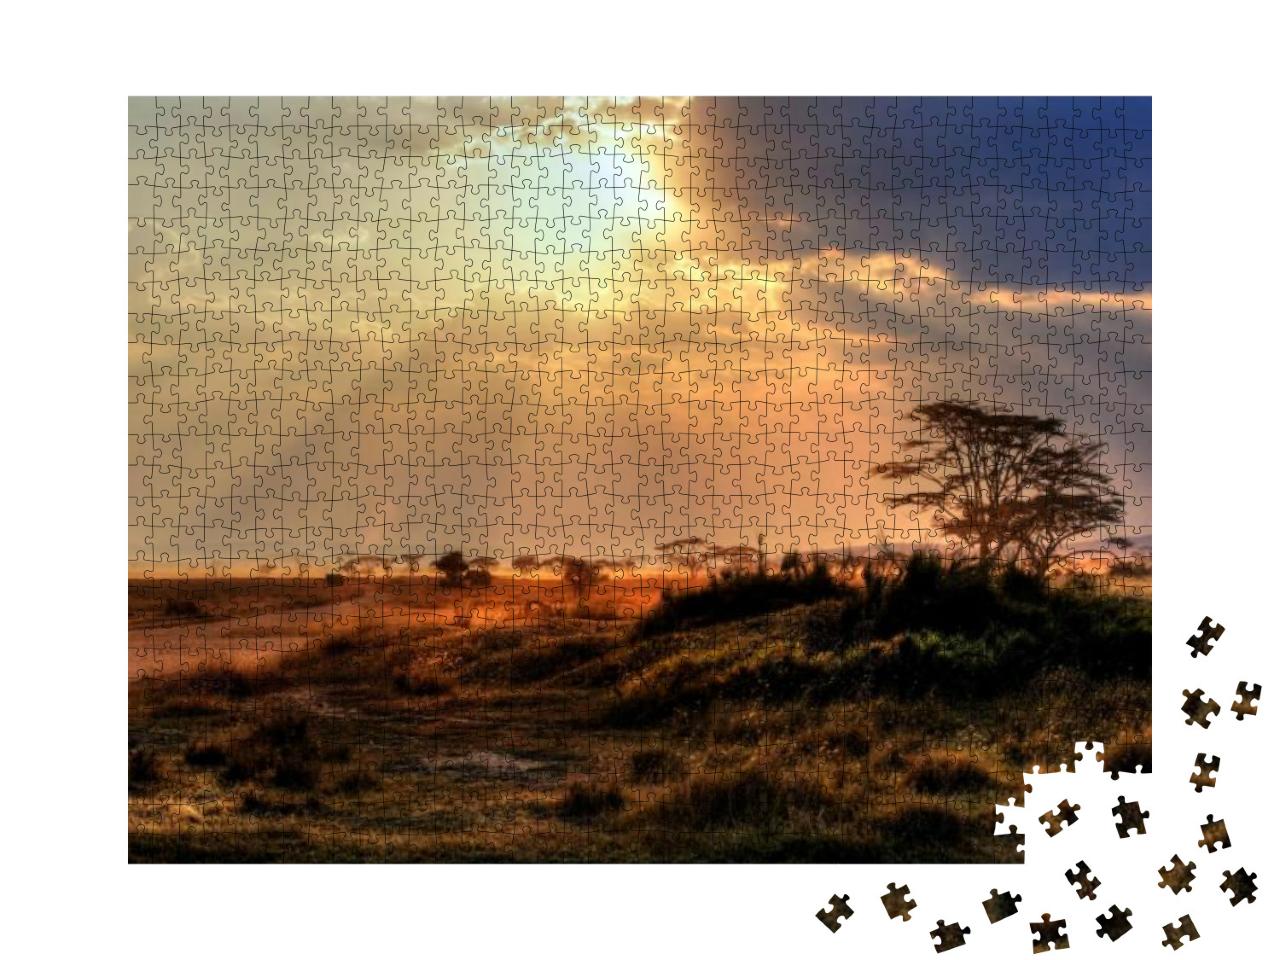 Puzzle 1000 Teile „Wunderschöner Sonnenuntergang in einem Nationalpark in Afrika“